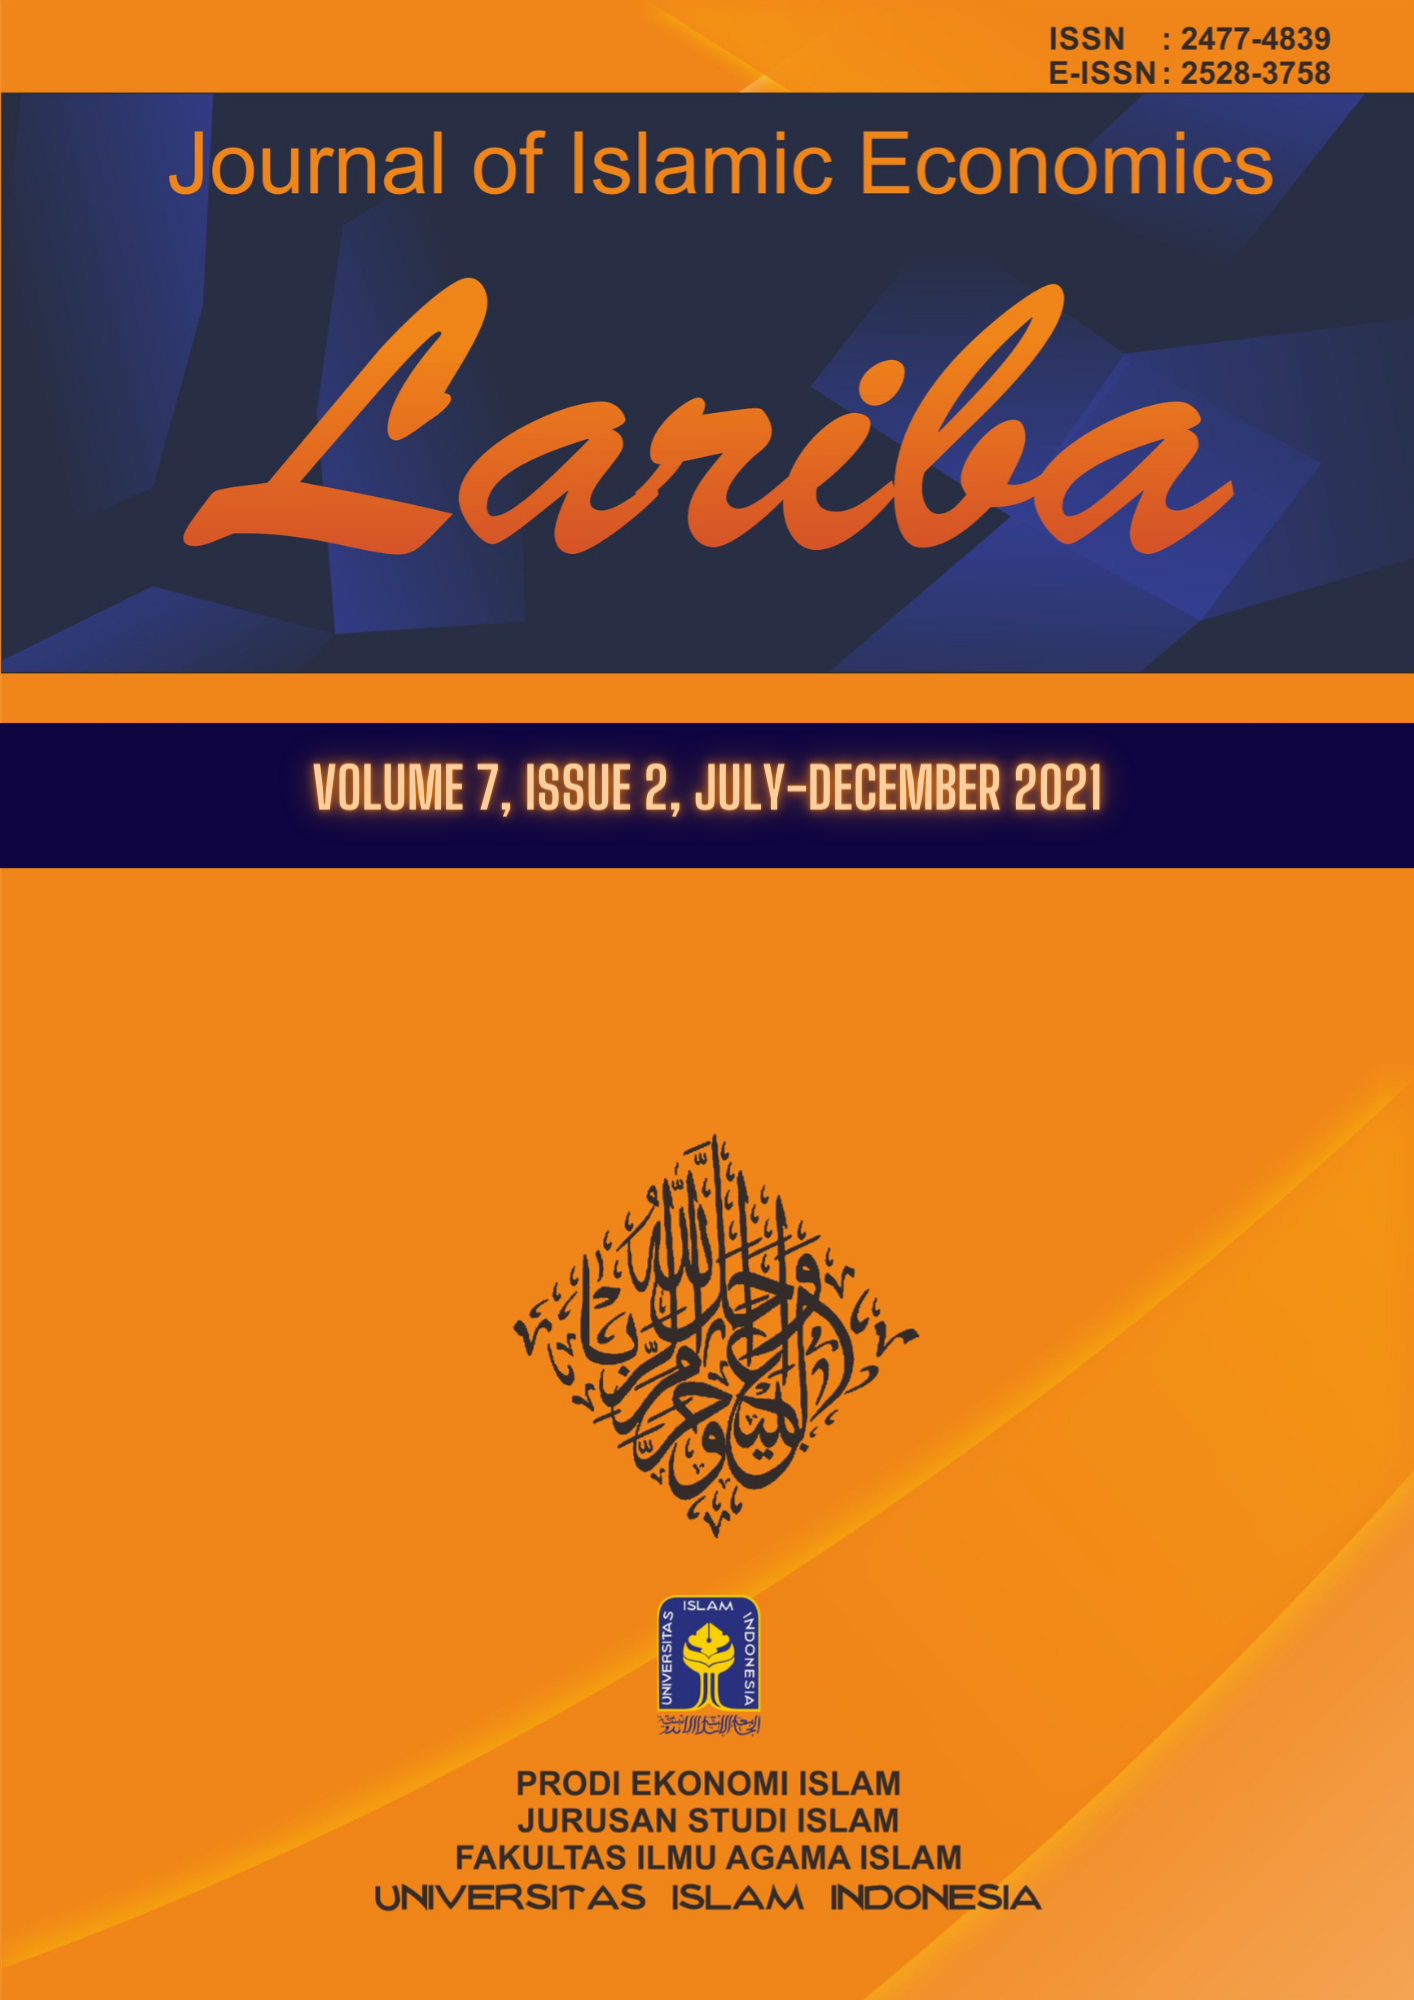 Cover JIELariba Volume 7, Issue 2, July-December 2021